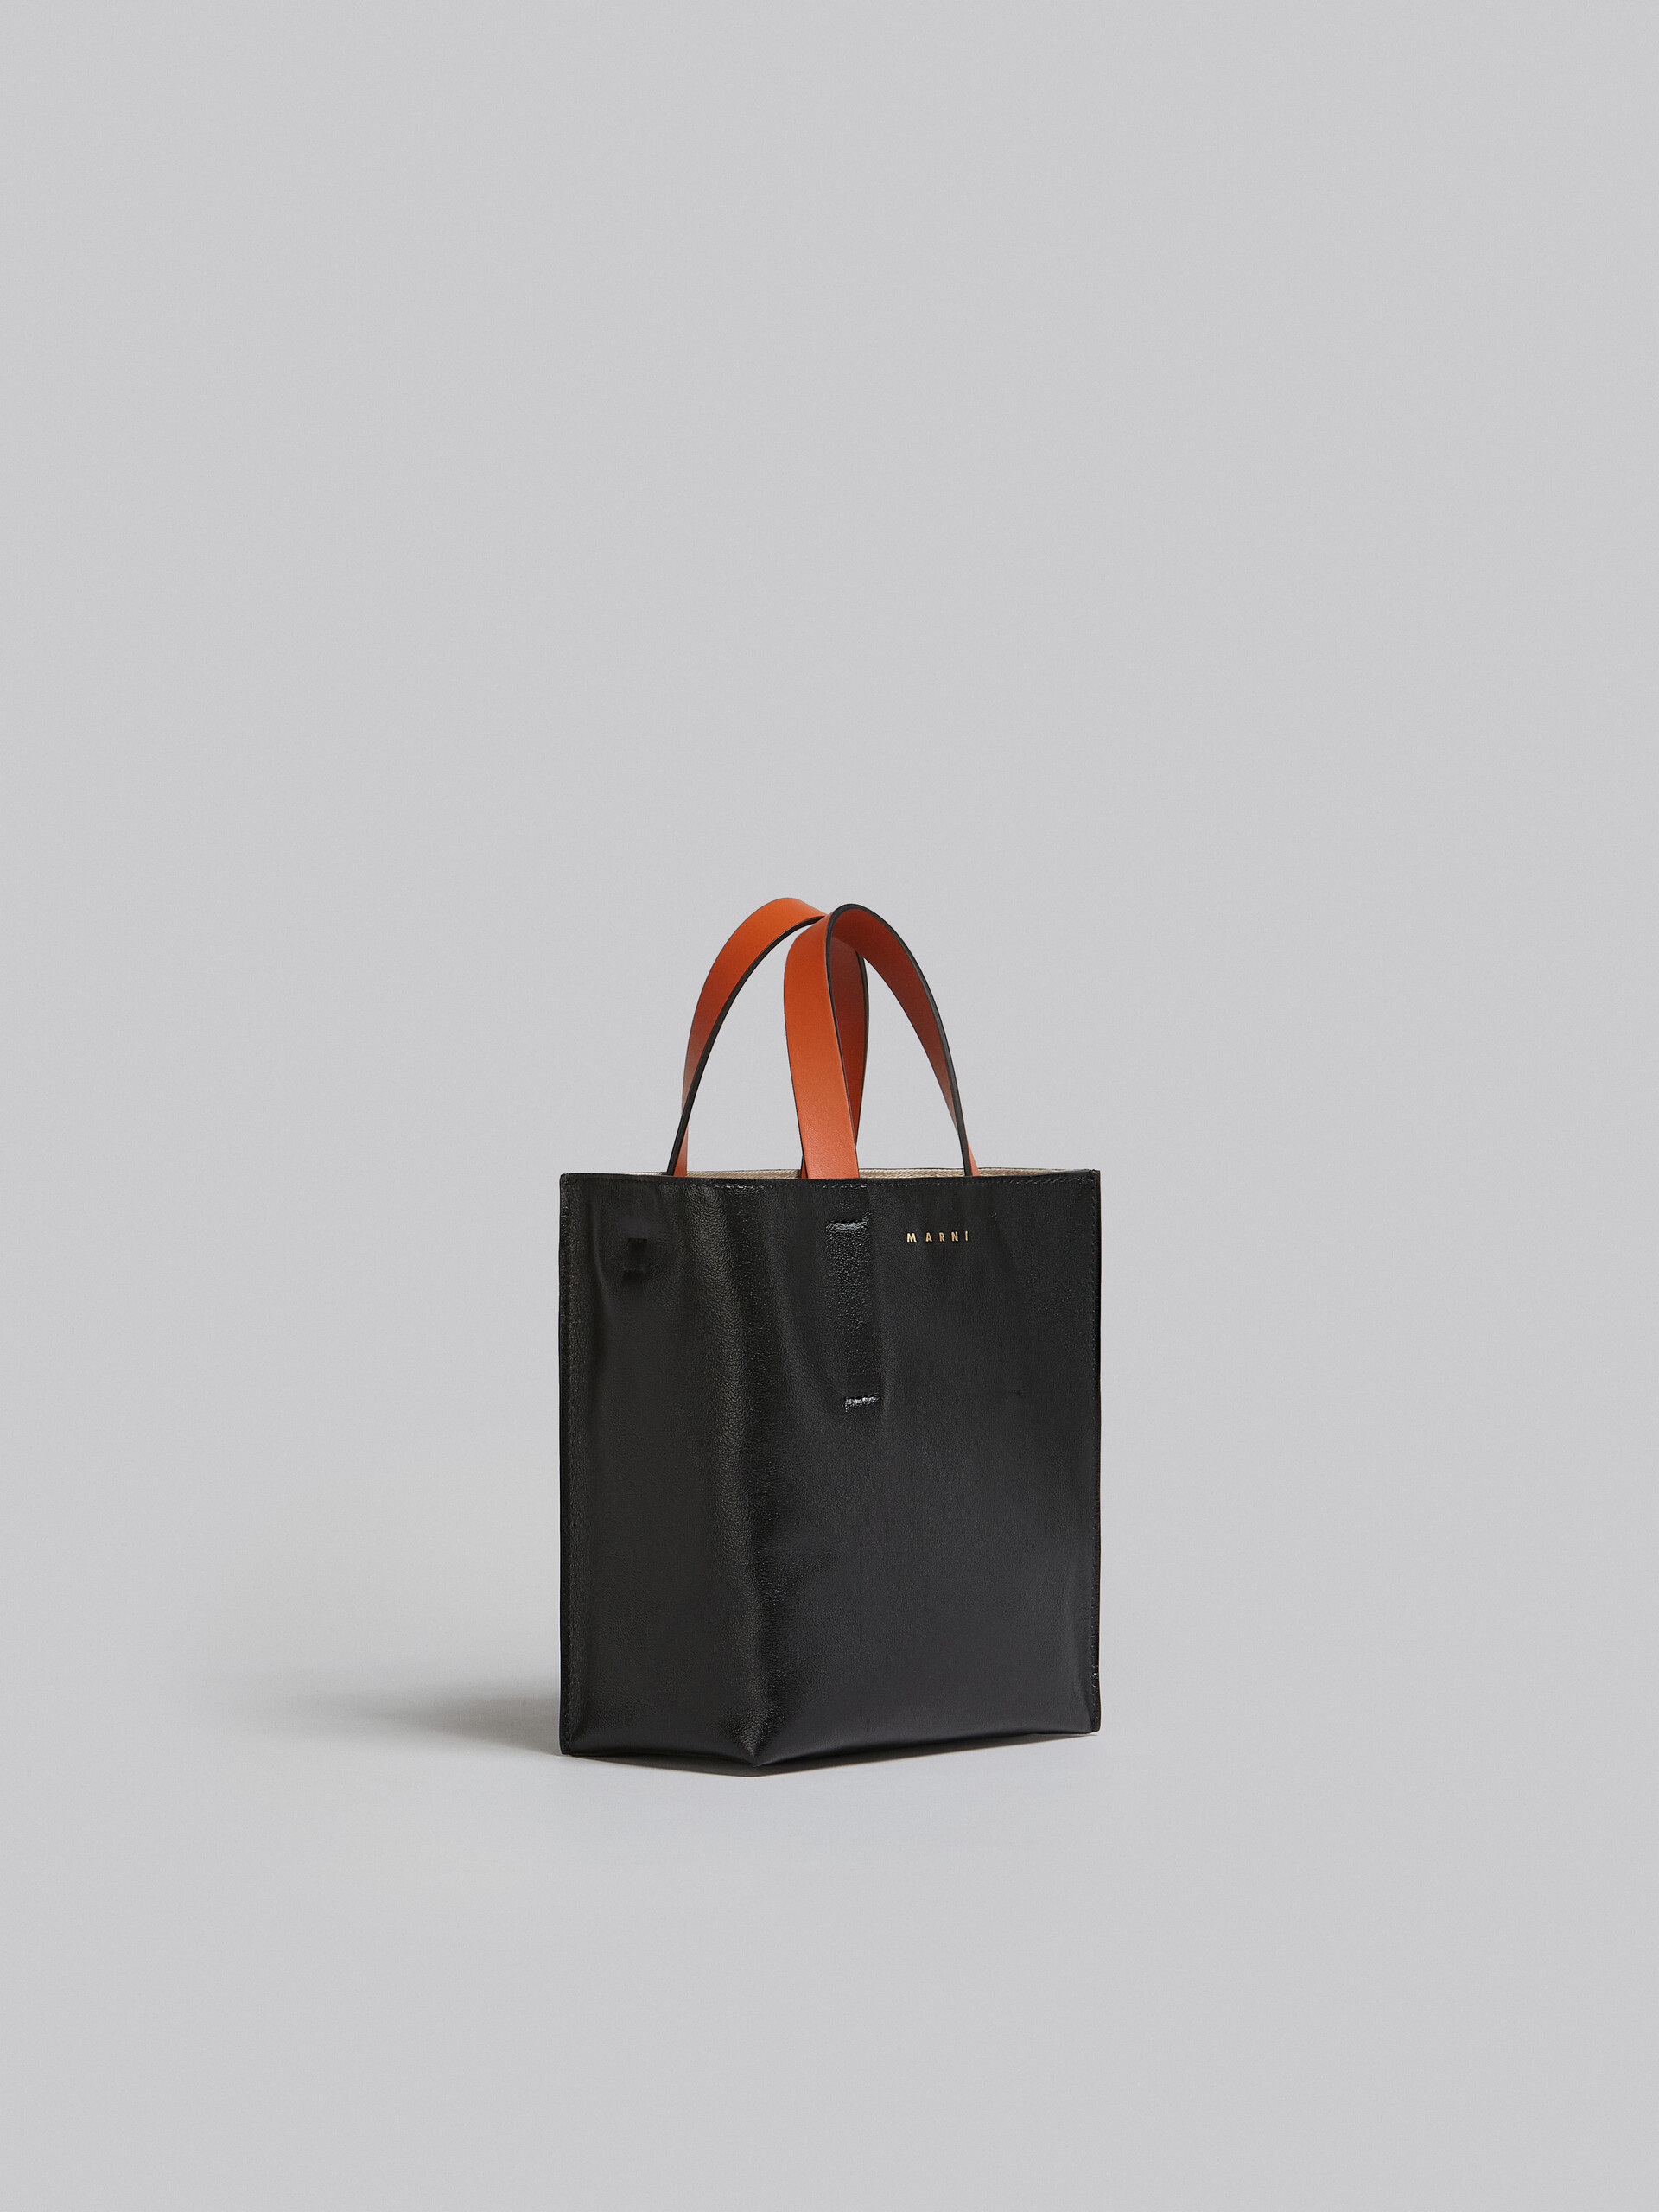 Mini-sac Museo Soft en cuir gris, noir et rouge - Sacs cabas - Image 6